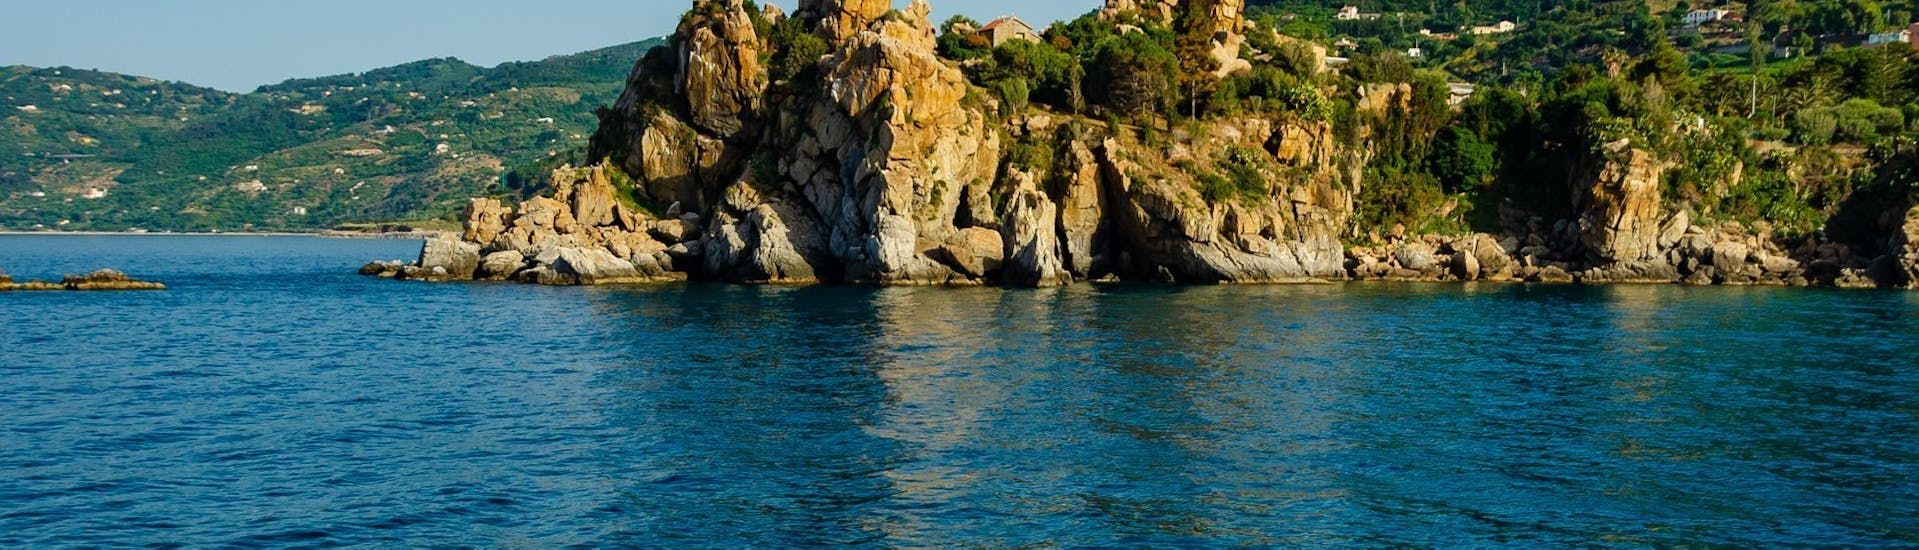 Bild der Küste von Cefalù, aufgenommen von einem RIB-Boot von Marina Yachting Cefalù des RIB-Bootverleihs für bis zu 7 Personen.